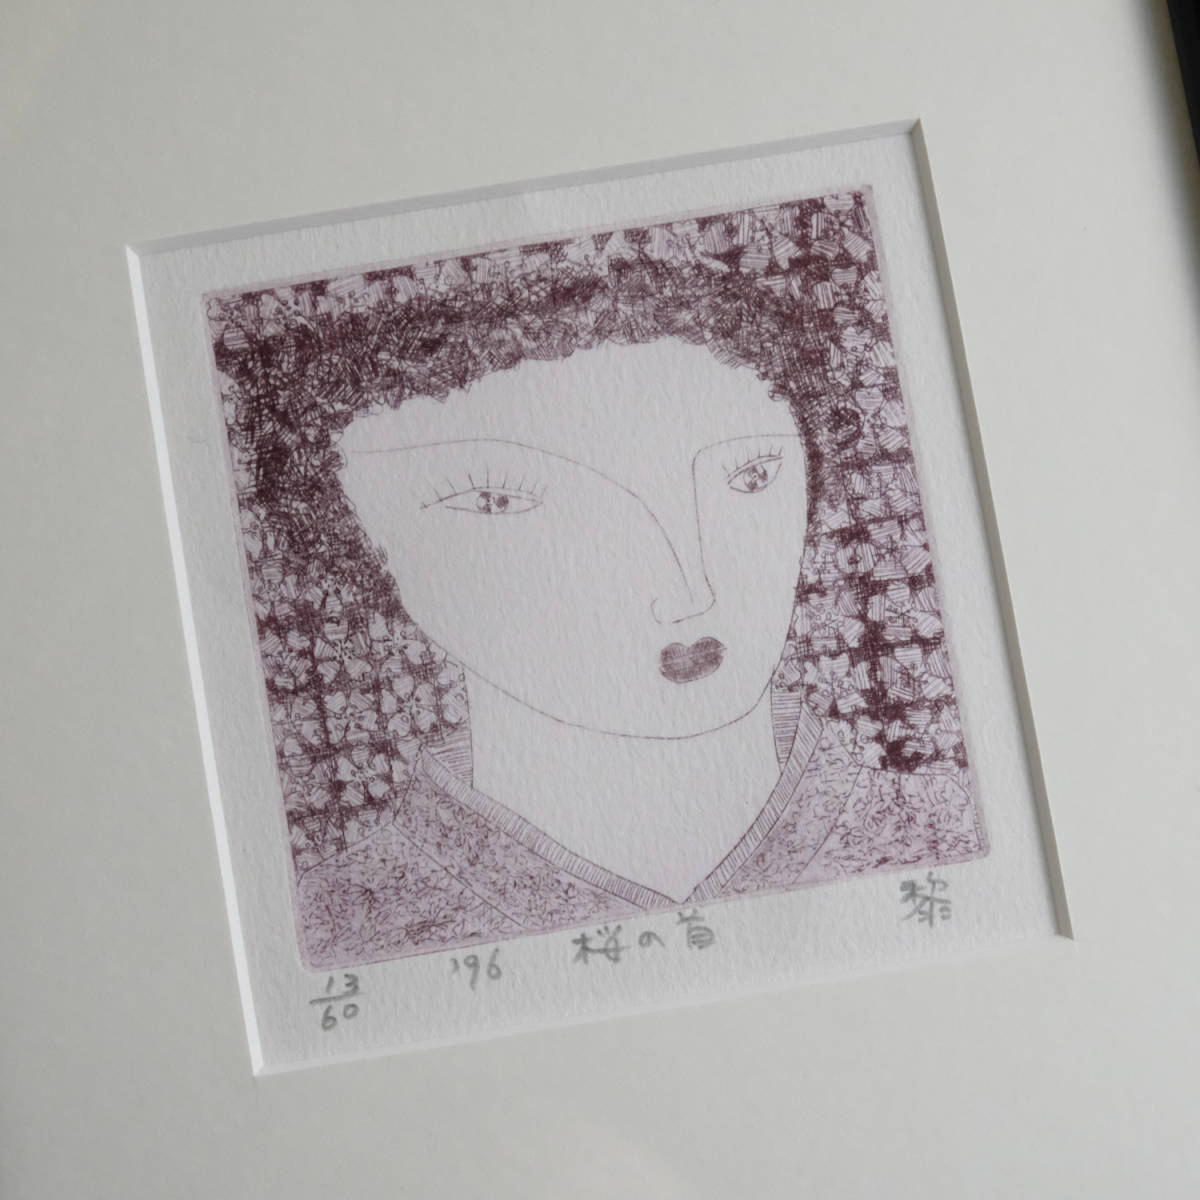 레이 니부 벚꽃 머리 동판 홋카이도 조각가 액자 그림, 삽화, 인쇄, 다른 사람